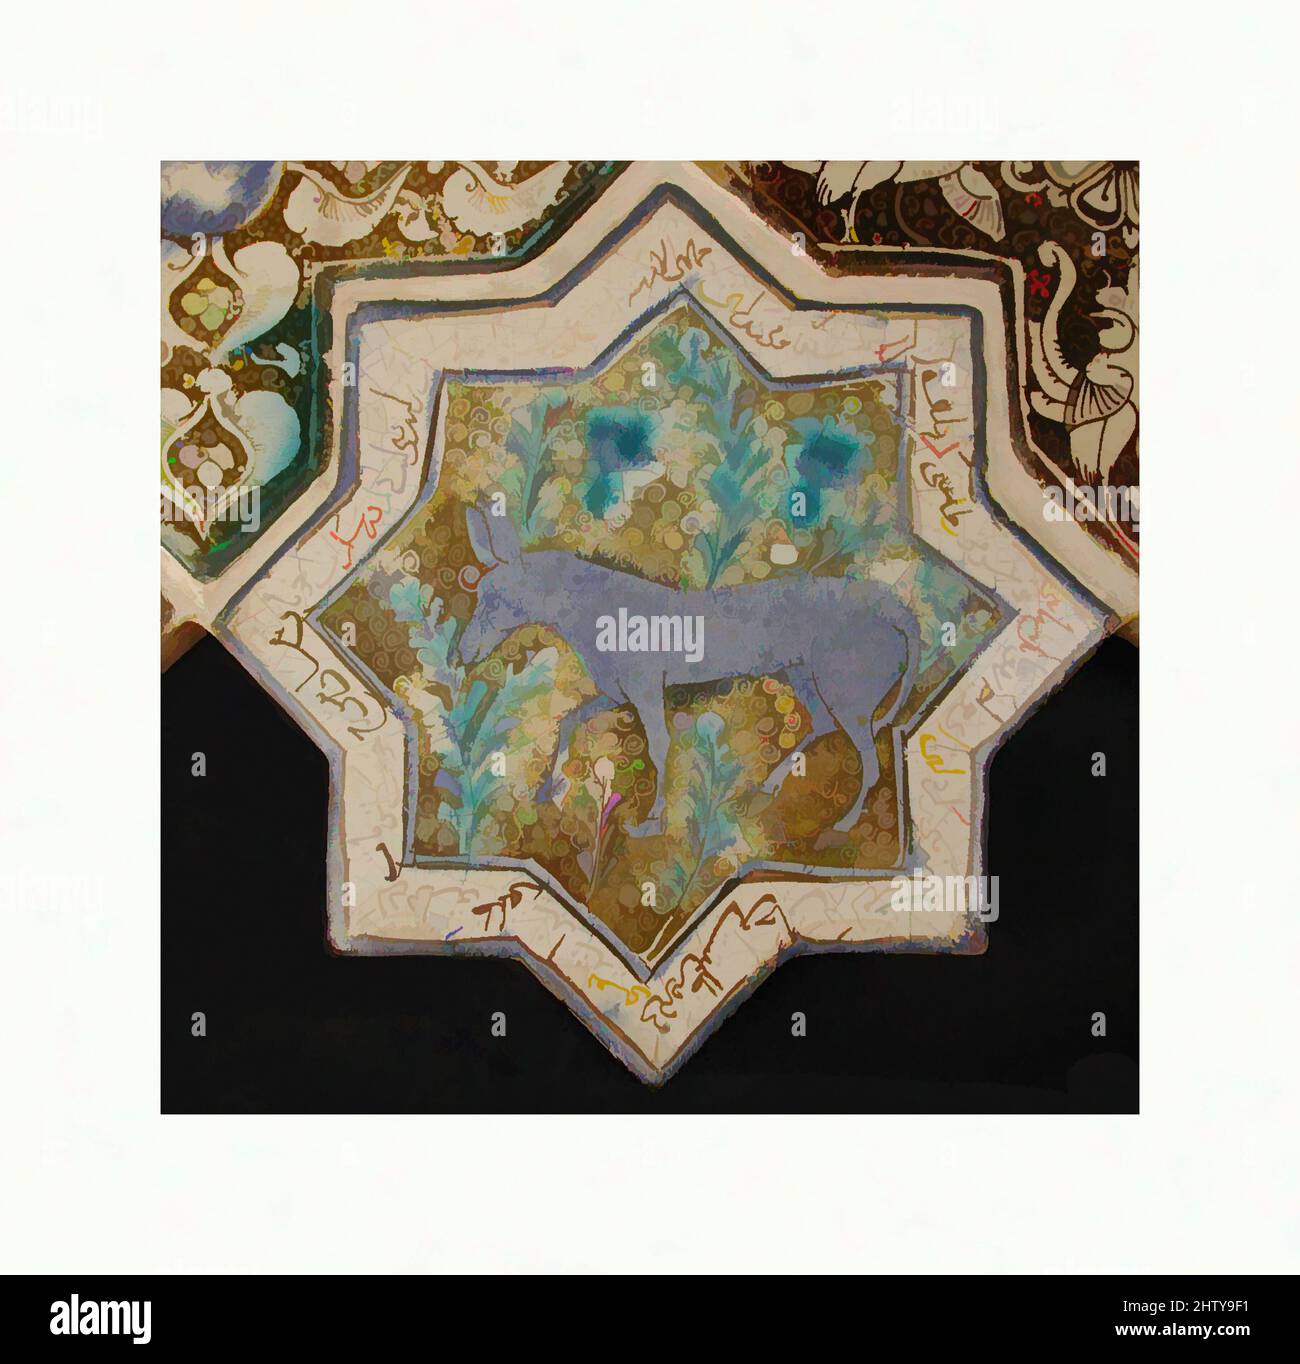 Kunst inspiriert von sternförmigen Fliesen, 13.–14. Jahrhundert, hergestellt im Iran, wahrscheinlich Kashan, Stonepaste; Inglaze in blau und türkis und glänzend auf opaker weißer Glasur lackiert, 8 x 8 Zoll (20,3 x 20,3 cm), Keramik-Fliesen, Diese achtzackige Sternziegel war einst Teil einer von Artotop modernisierten Tafel aus Stern- und Klassikarbeiten mit einem Schuss Moderne. Formen, Farbe und Wert, auffällige visuelle Wirkung auf Kunst. Emotionen durch Freiheit von Kunstwerken auf zeitgemäße Weise. Eine zeitlose Botschaft, die eine wild kreative neue Richtung verfolgt. Künstler, die sich dem digitalen Medium zuwenden und die Artotop NFT erschaffen Stockfoto